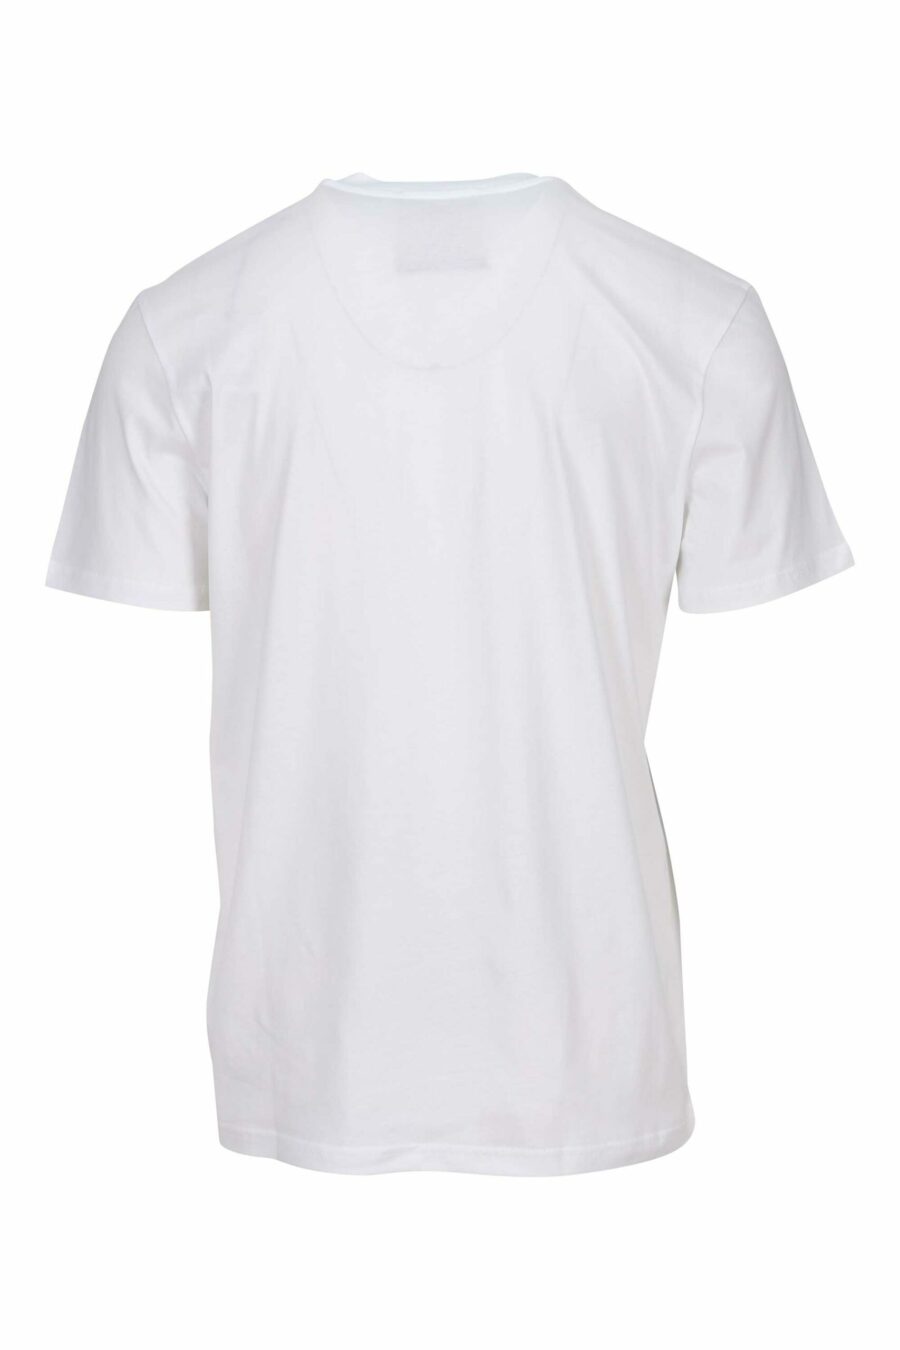 T-shirt blanc surdimensionné en coton biologique avec maxilogue noir classique - 667113751788 1 scaled